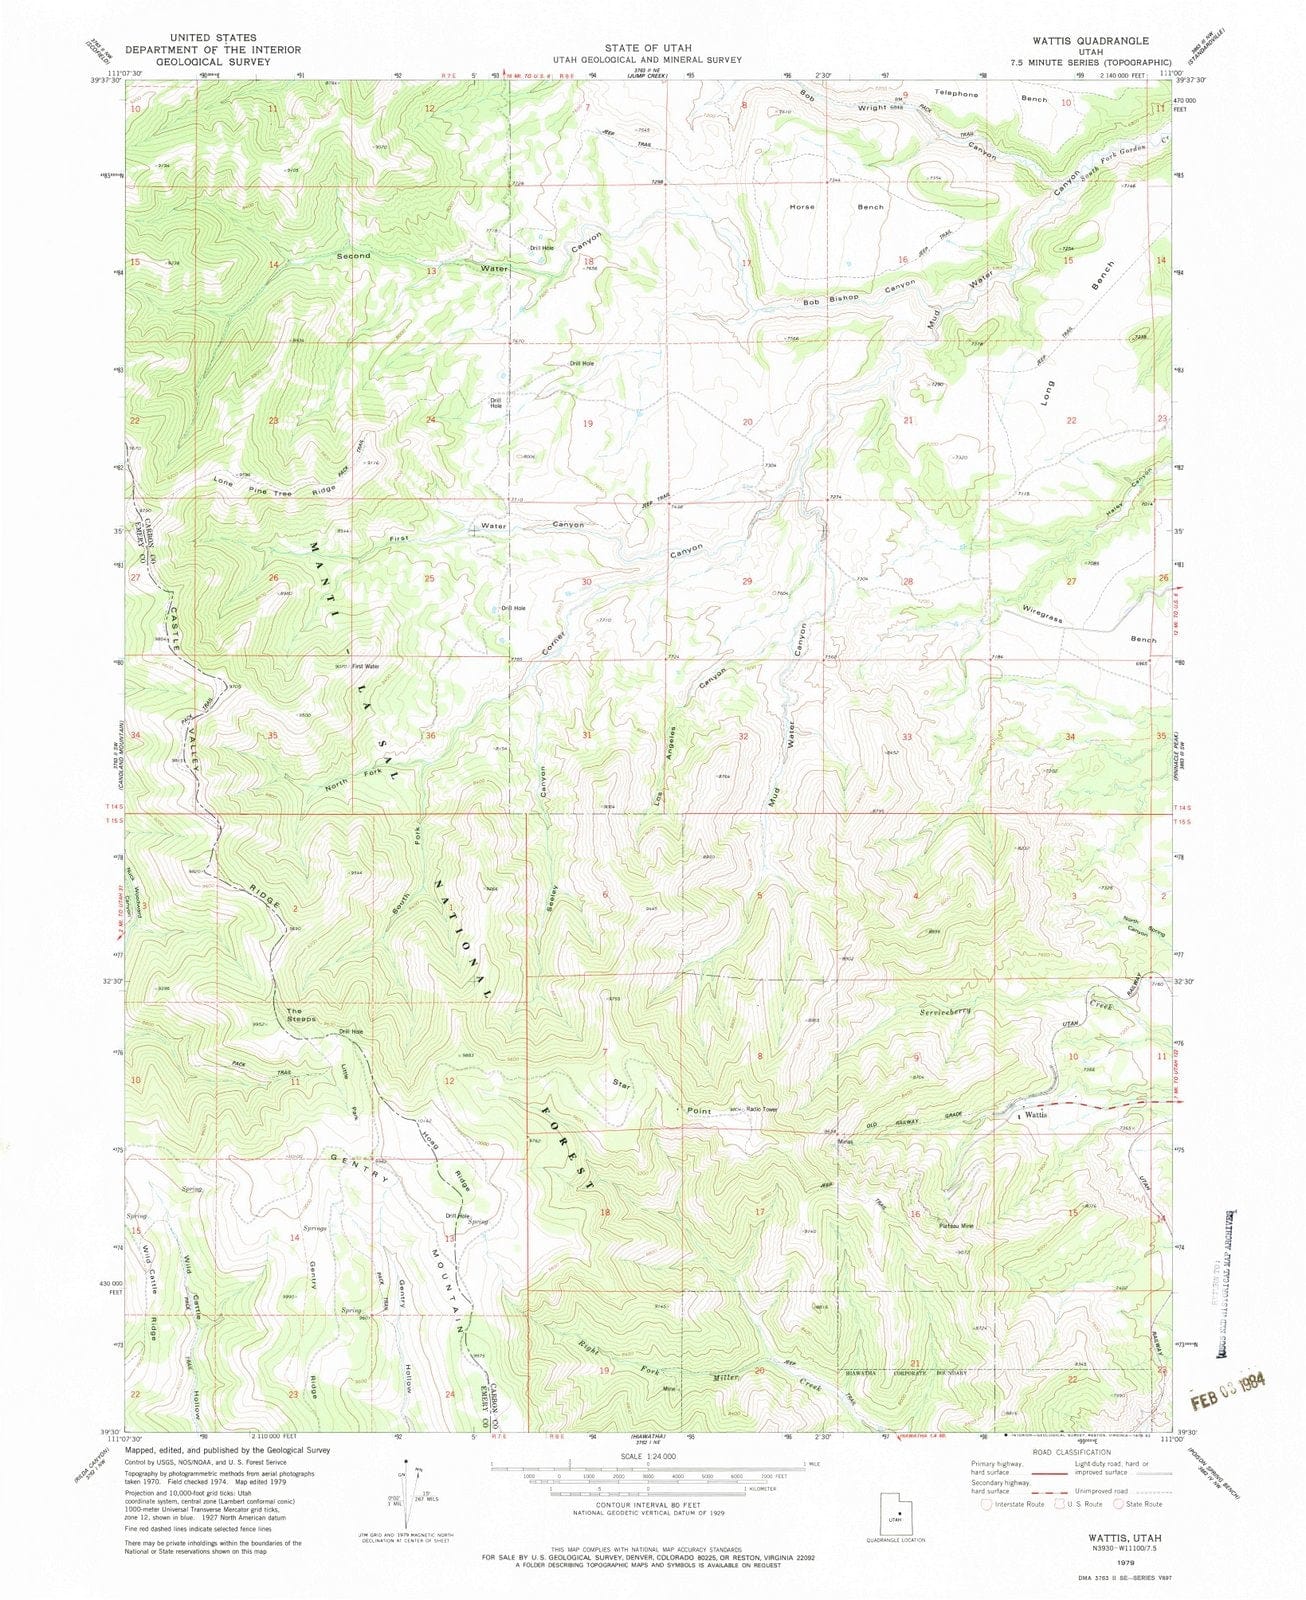 1979 Wattis, UT - Utah - USGS Topographic Map